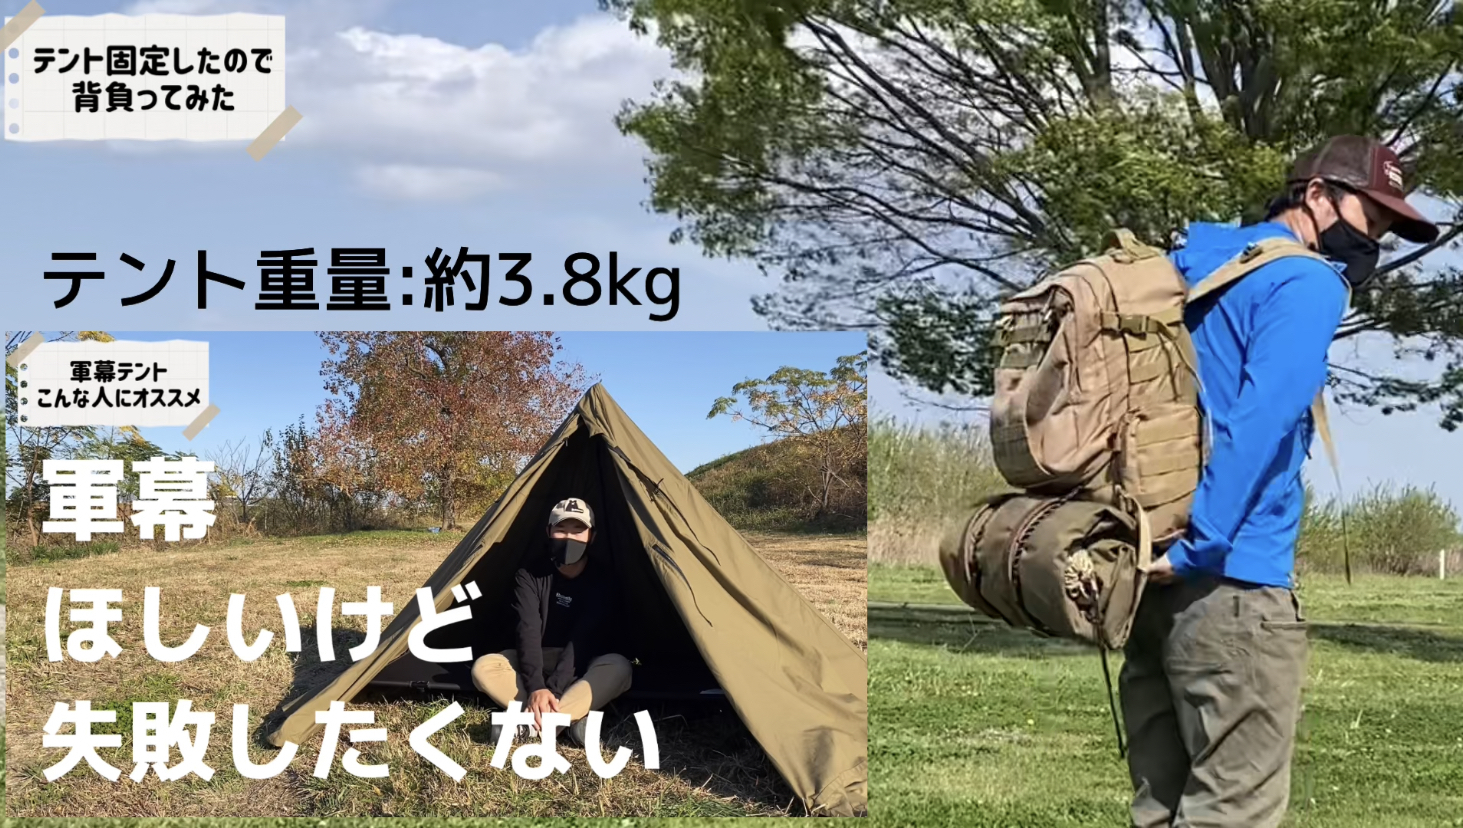 軍幕と呼ばれるテントは結構重い。